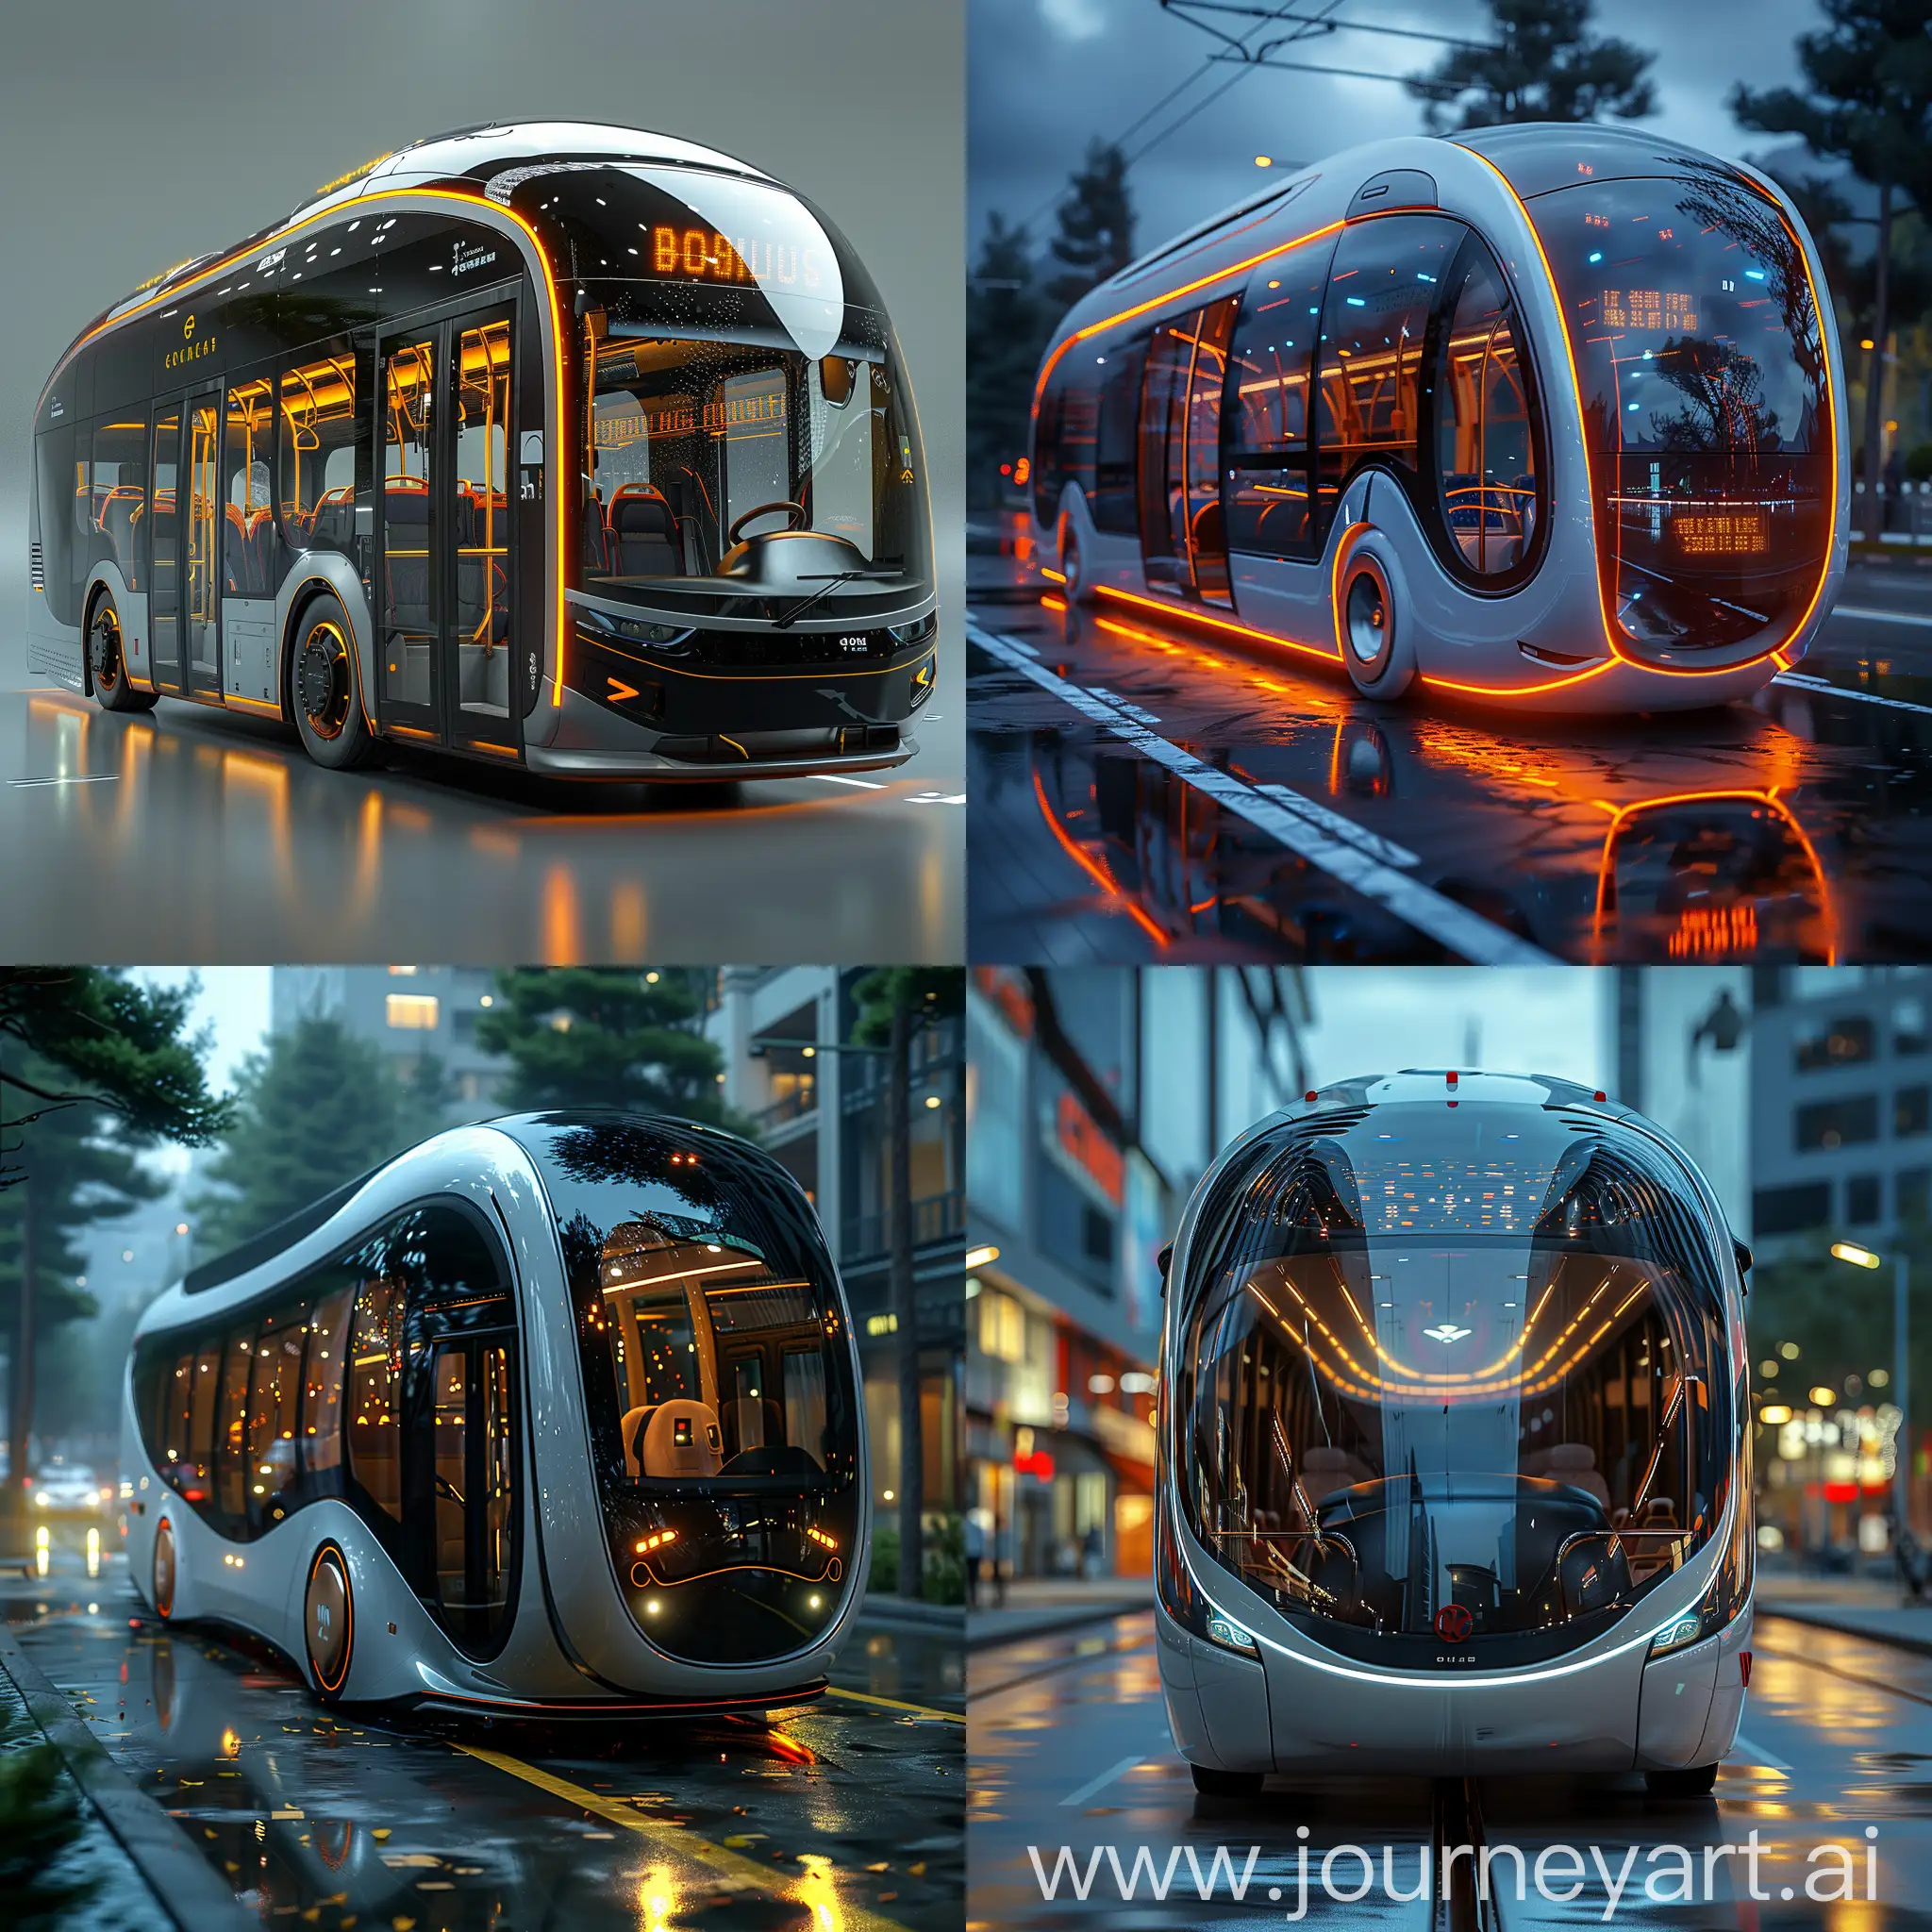 Zero-Carbon-Futuristic-Bus-in-HighTech-Style